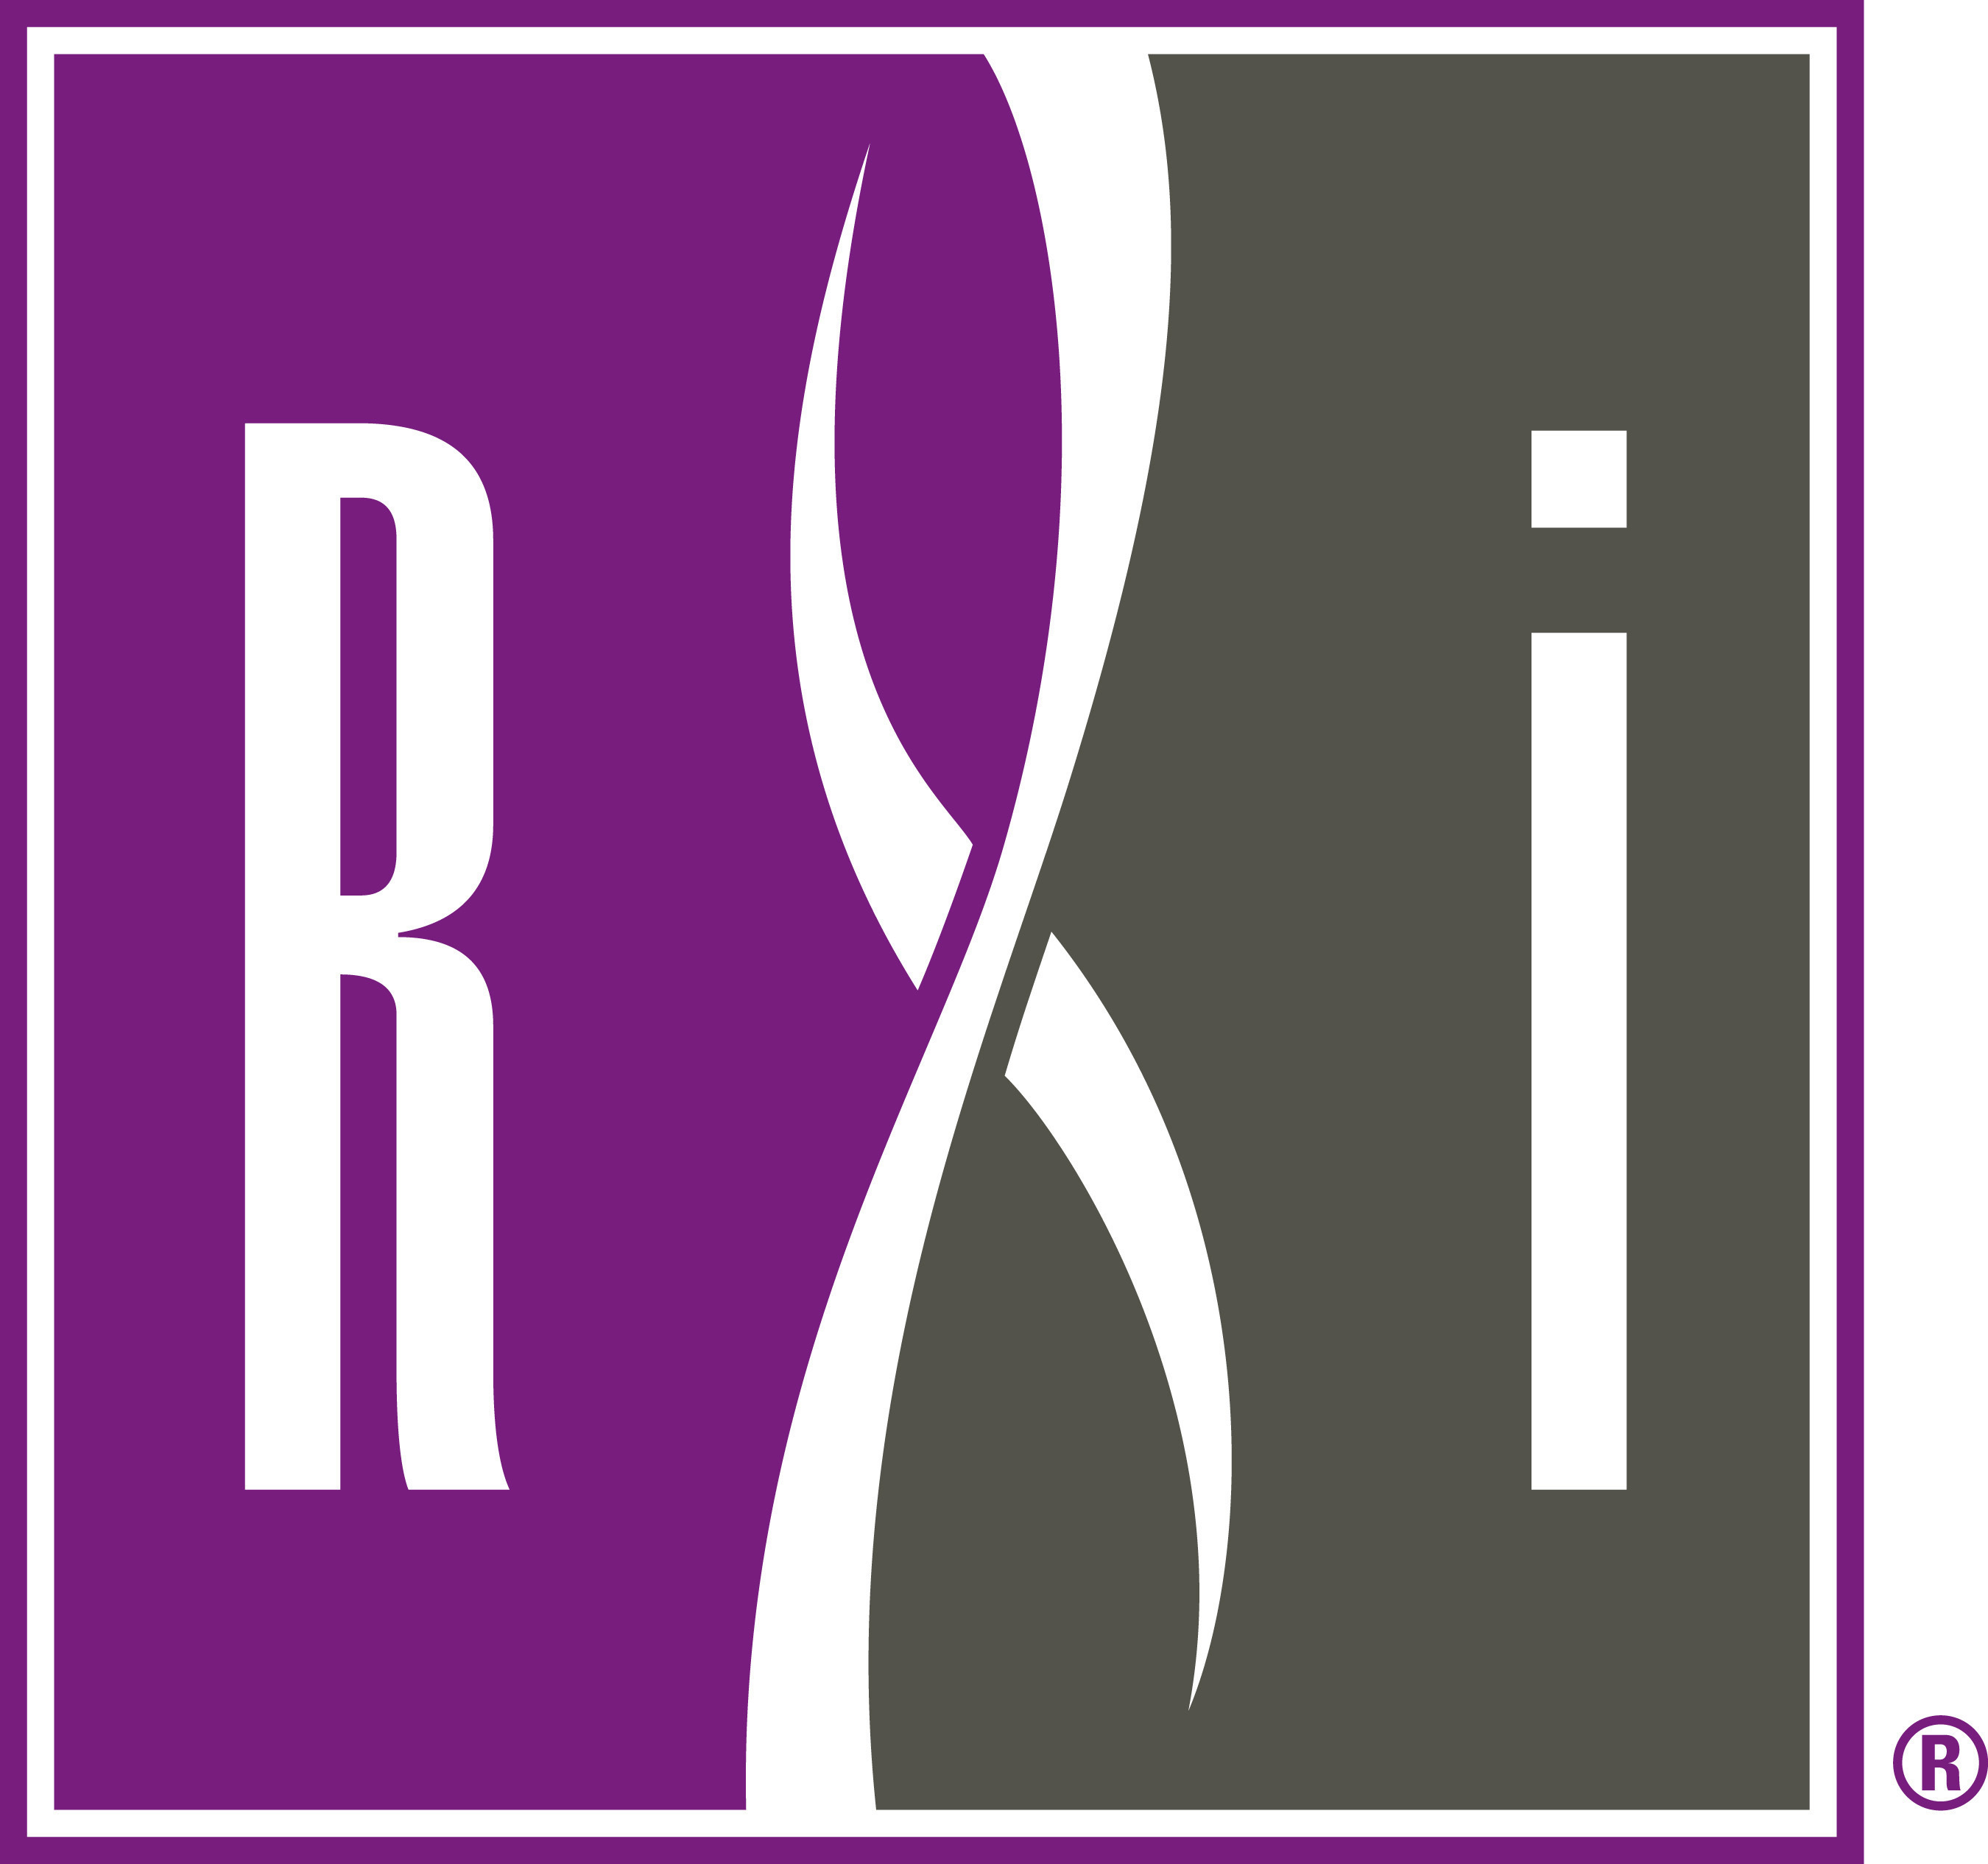 RXi Pharmaceuticals. (PRNewsFoto/RXi Pharmaceuticals Corporation) (PRNewsFoto/RXI PHARMACEUTICALS CORPORATION)